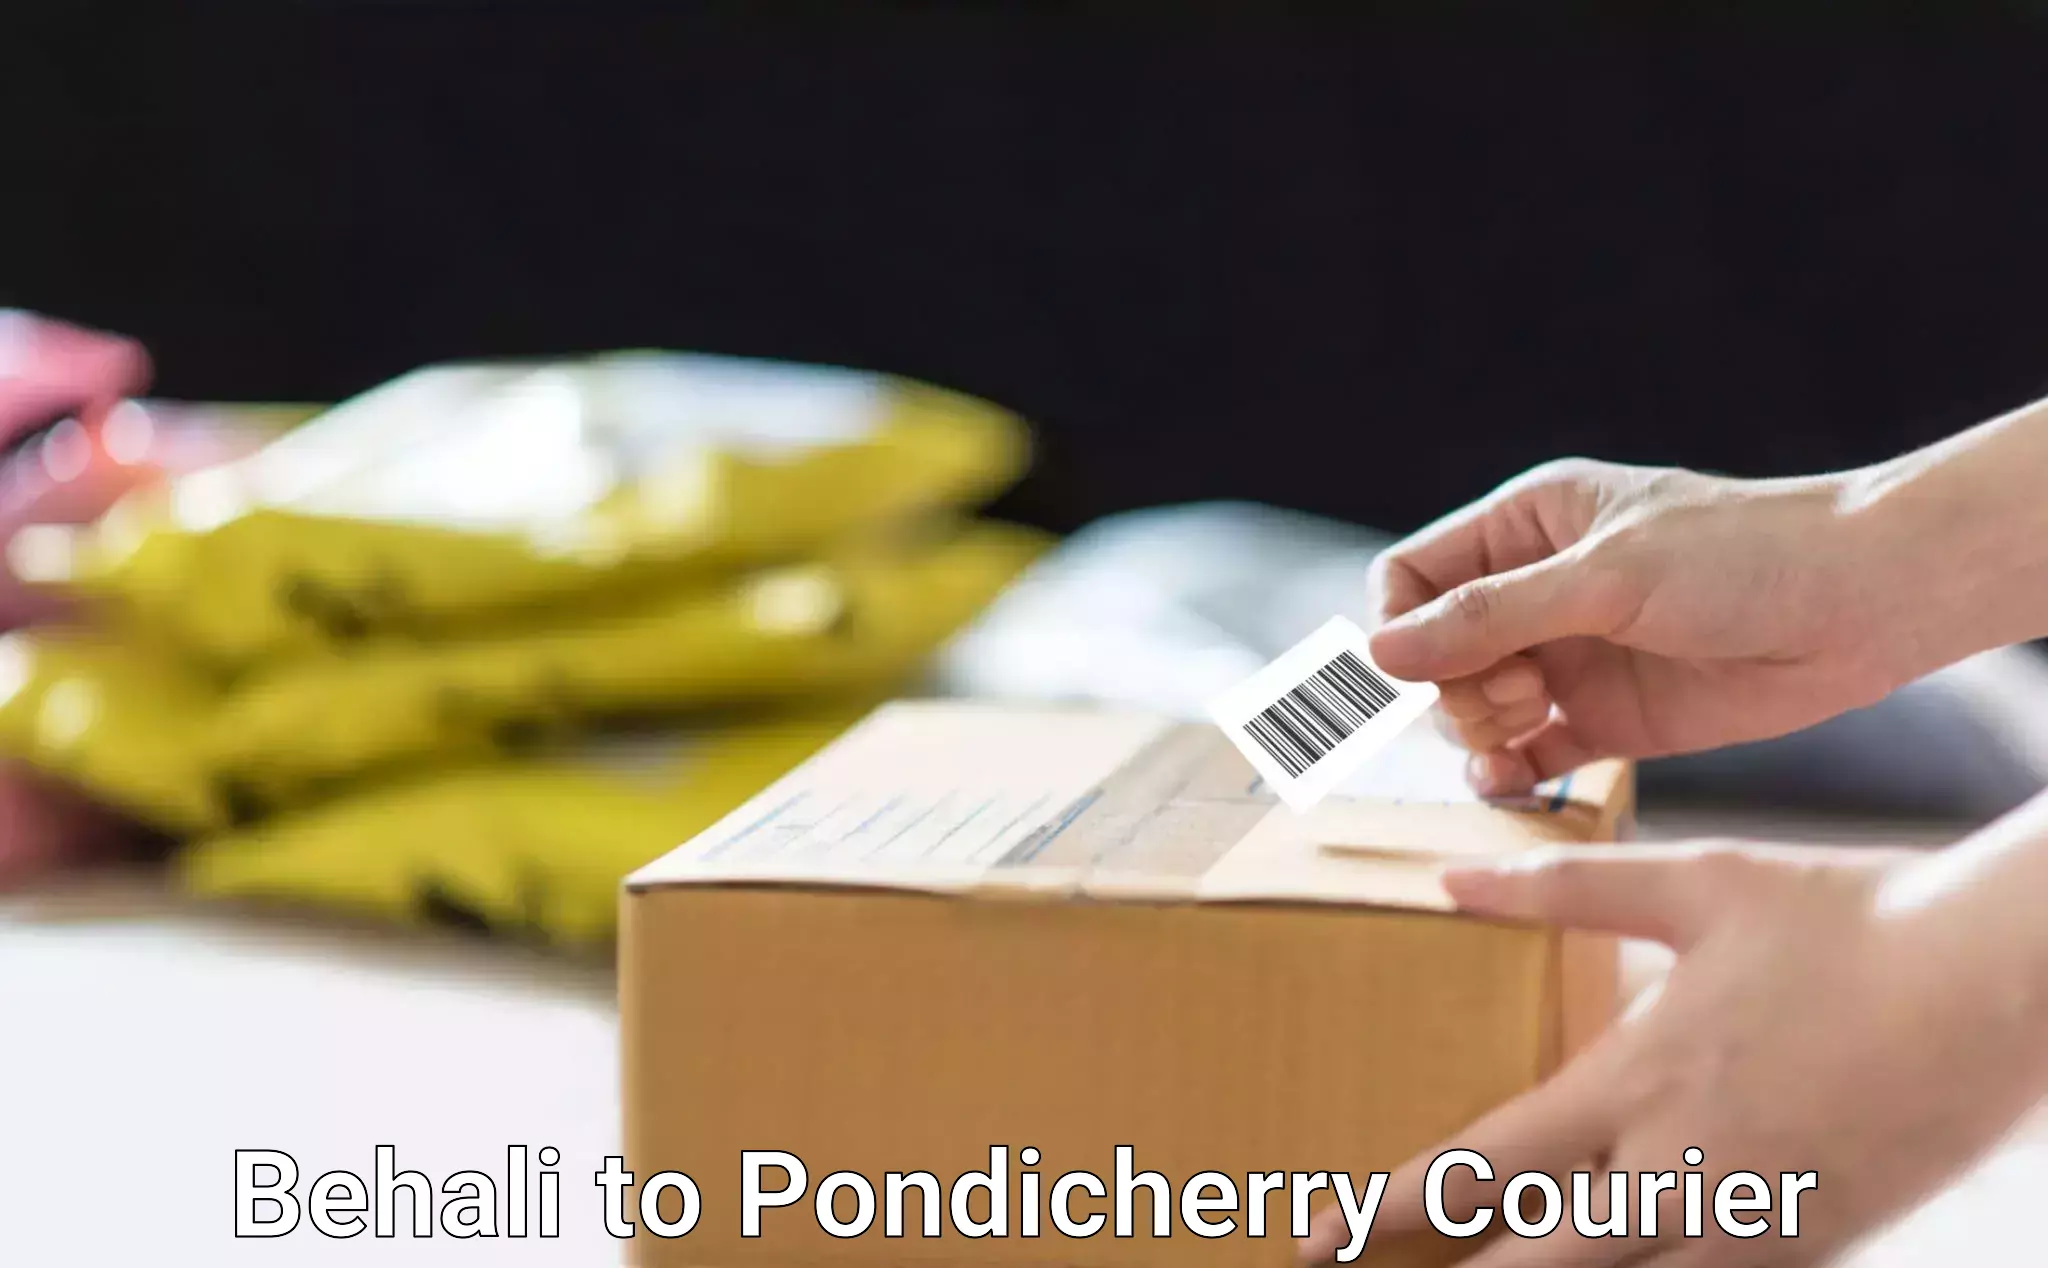 Modern courier technology Behali to Pondicherry